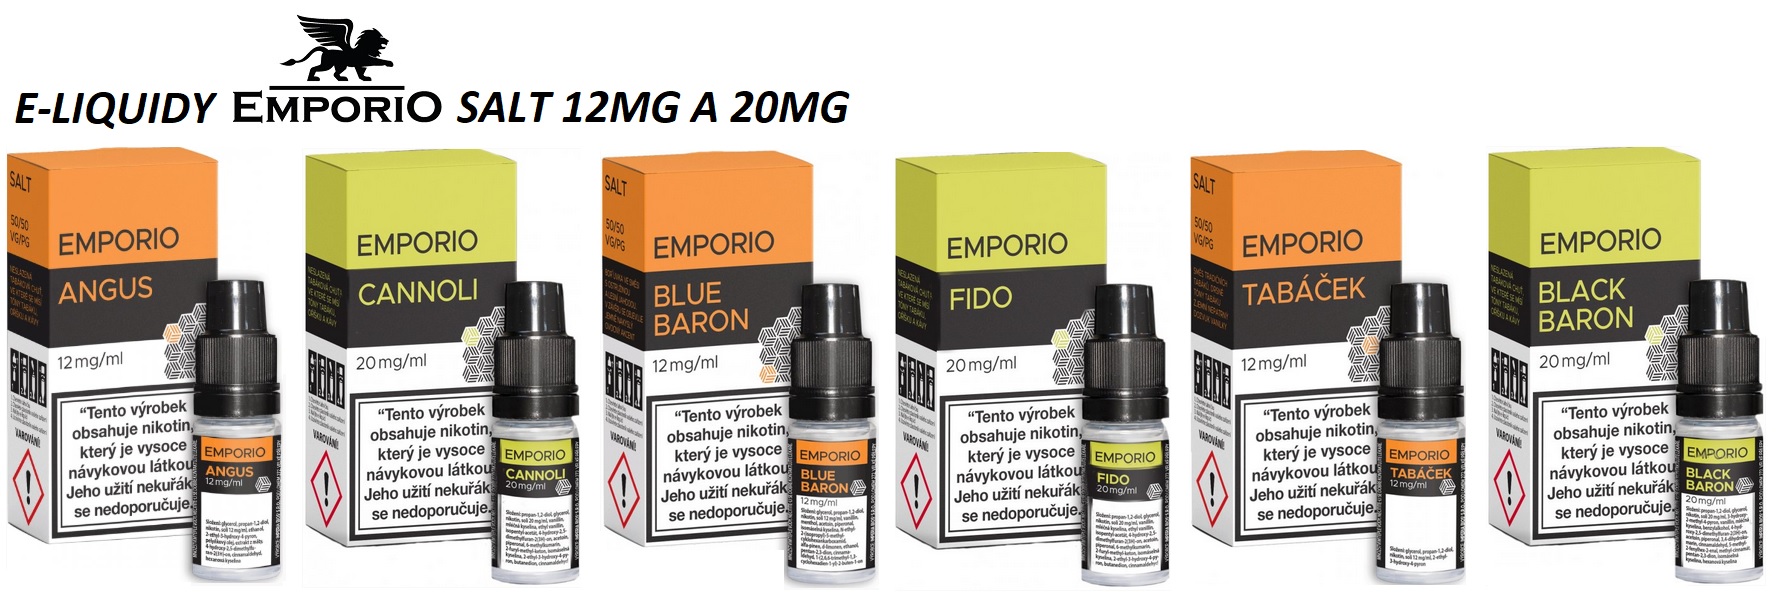 e-liquidy-emporio-salt-10ml-12mg-20mg